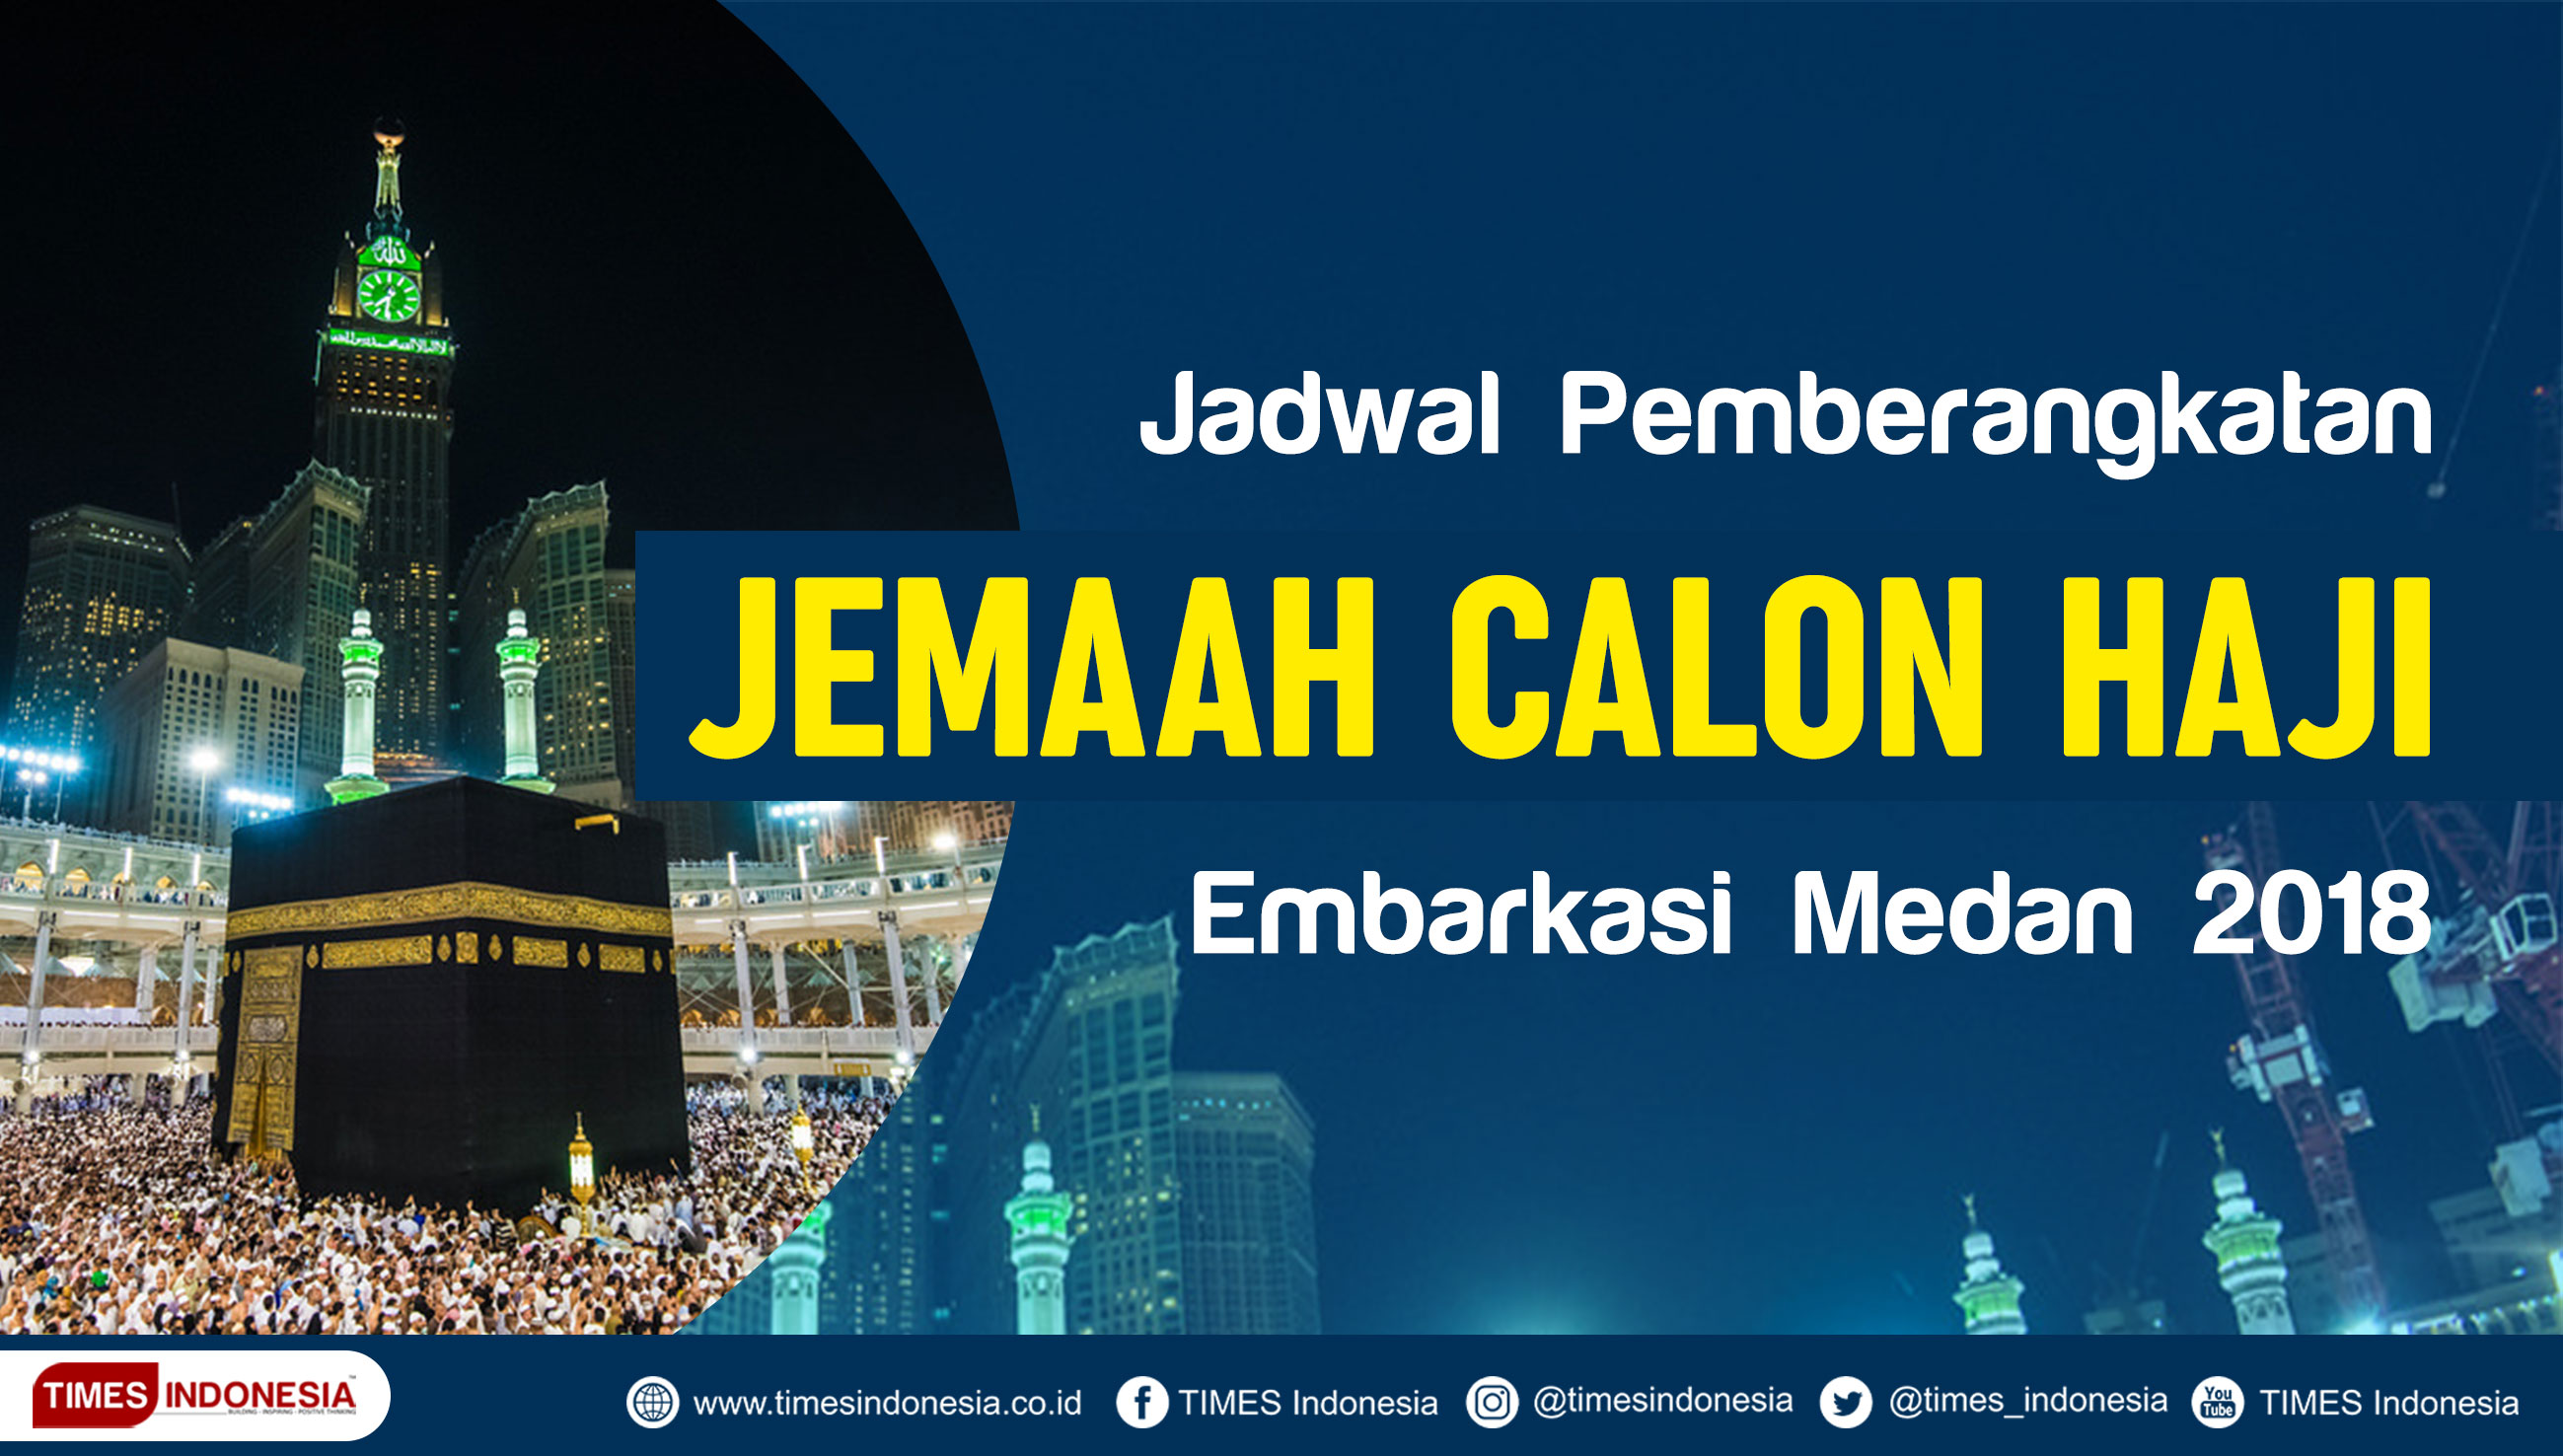 Jadwal Lengkap Pemberangkatan dan Pemulangan JCH Embarkasi Medan 2018